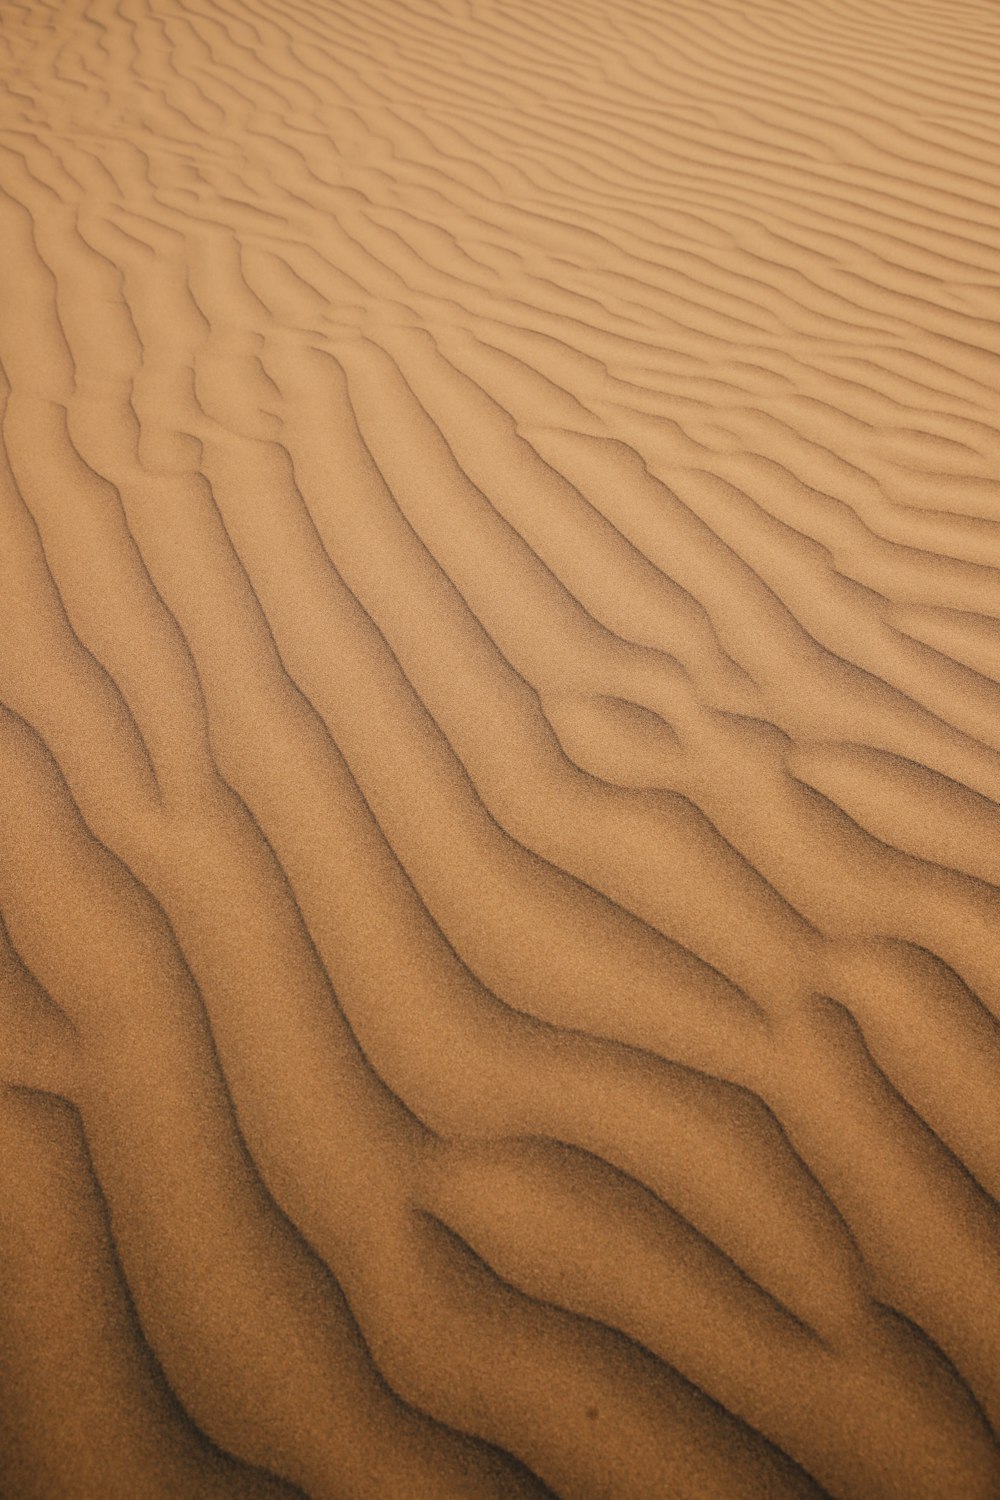 una zona sabbiosa con linee nella sabbia